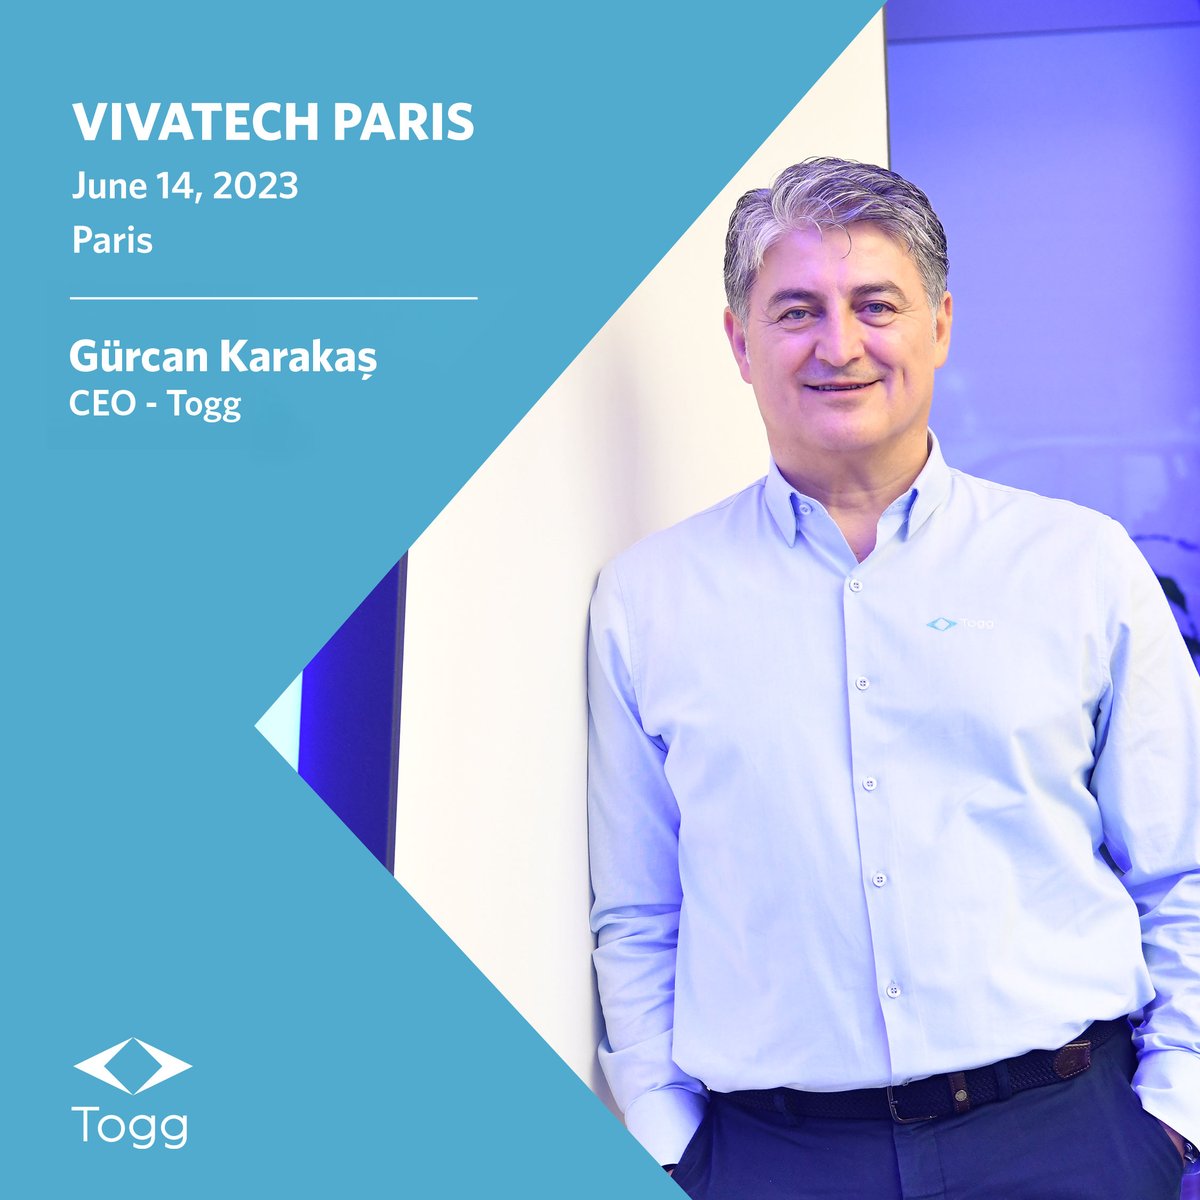 CEO’muz Gürcan Karakaş, girişimci ve teknoloji fuarı Vivatech'te konuşmacı olarak yer alacak. 

📌 14 Haziran 
📍 Paris